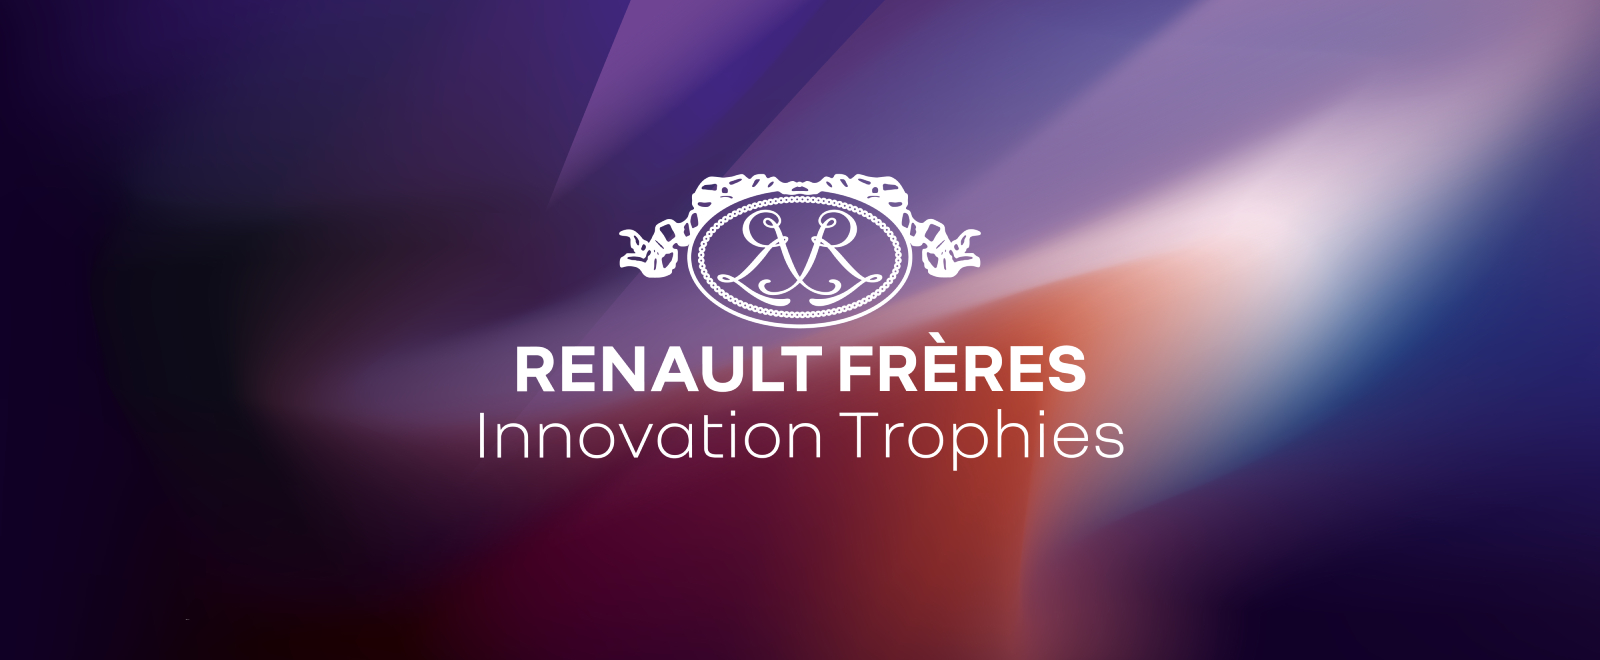 Trophées de l'Innovation Renault Frères